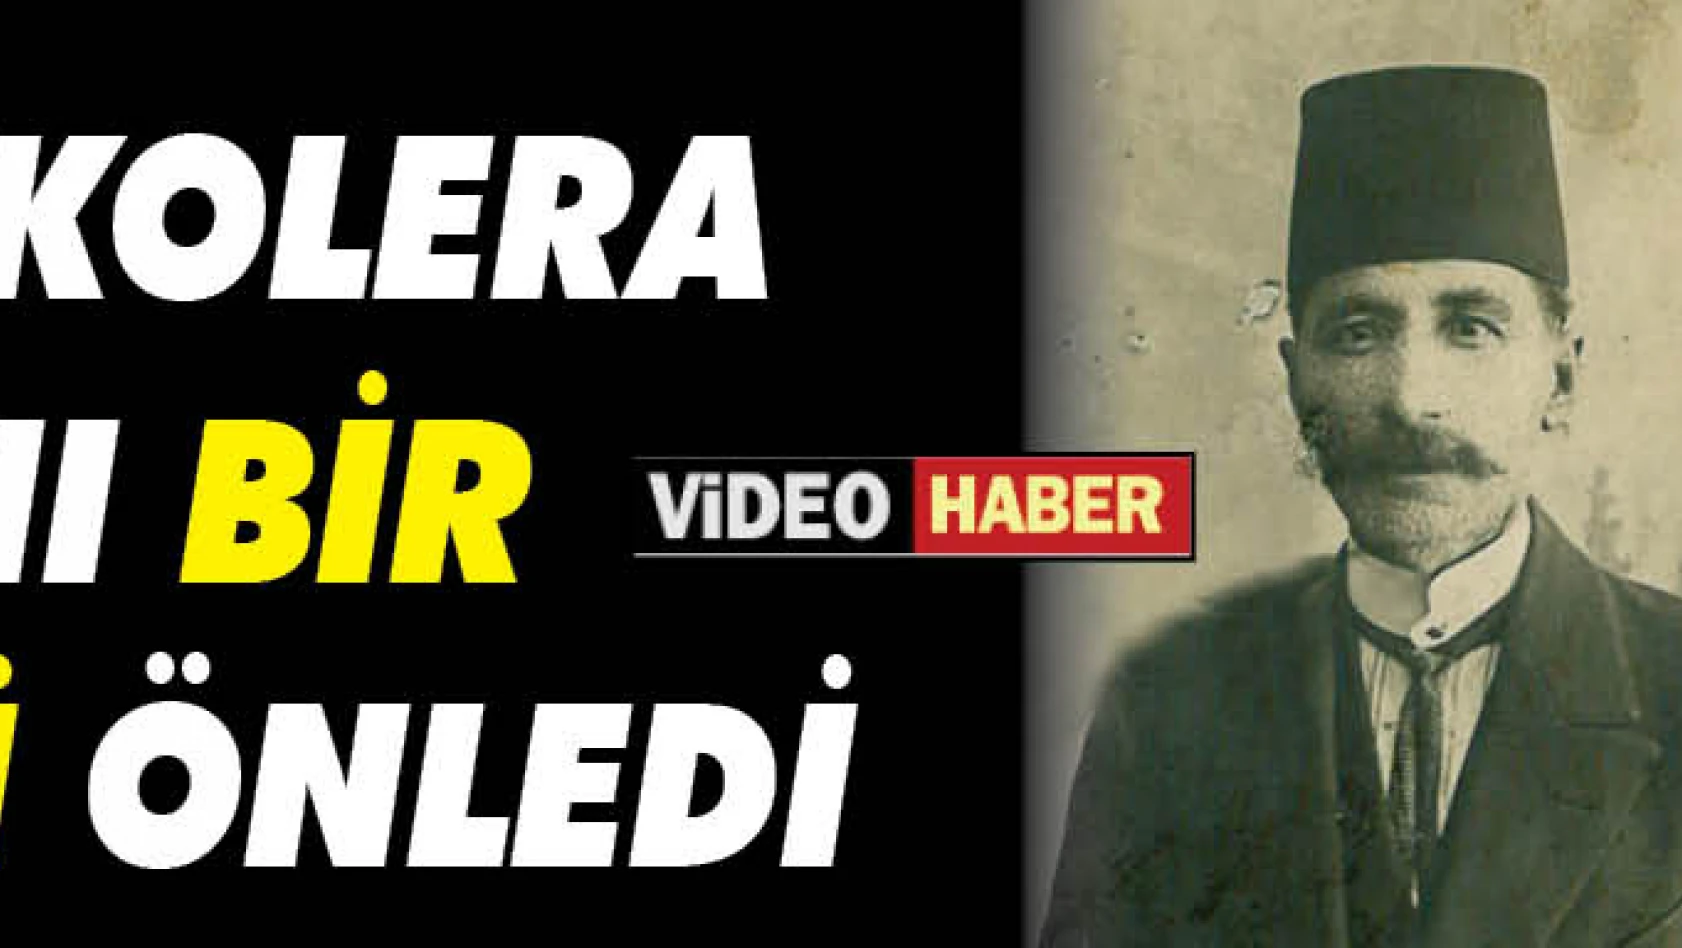 Kayseri'de 'kolera' salgınını bir gazetecinin önlediğini biliyor muydunuz?